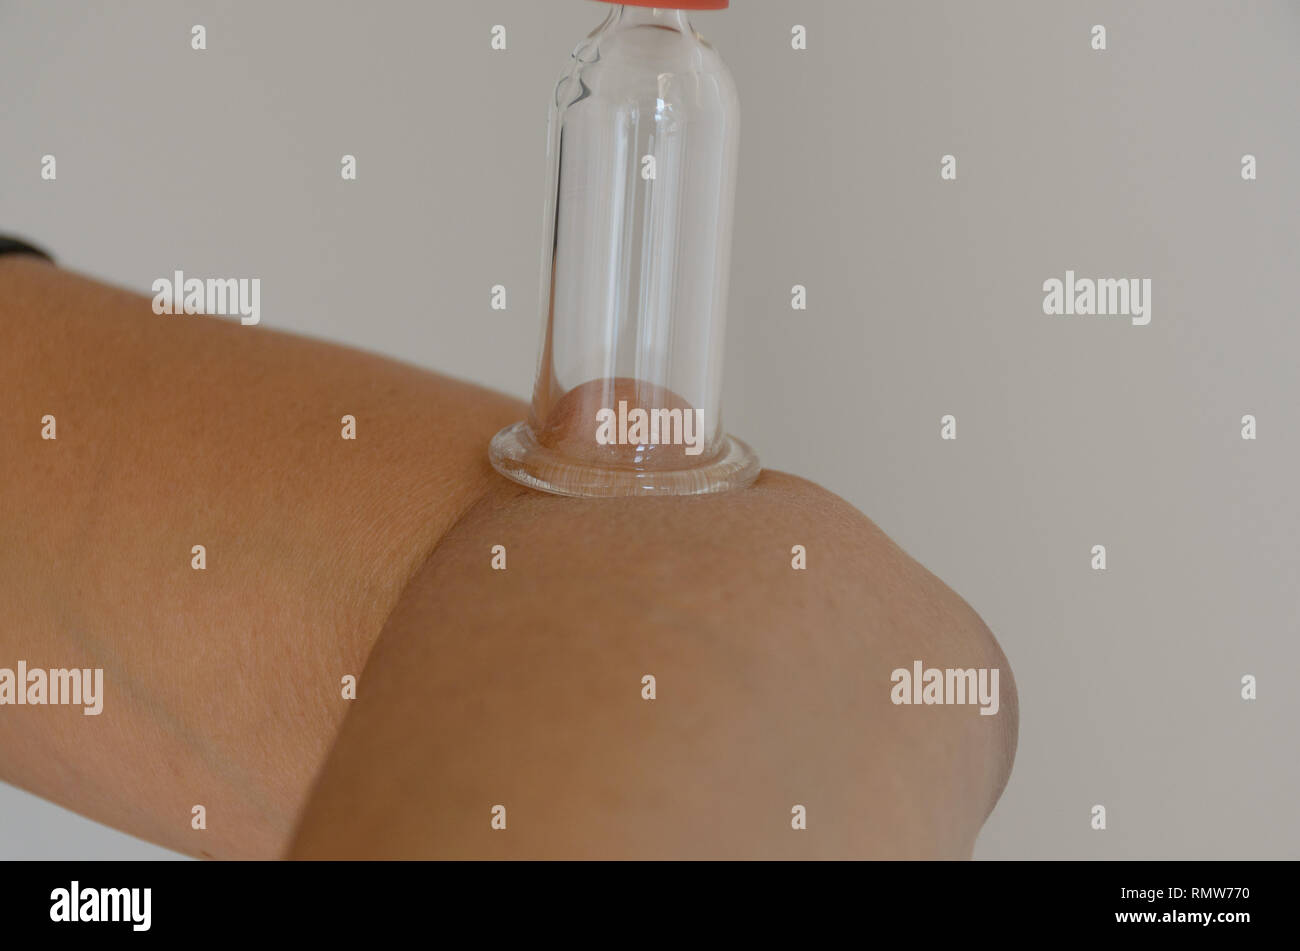 Close up sur le rouge et l'ampoule transparente cupping therapy périphérique relié au coude in front of white background Banque D'Images